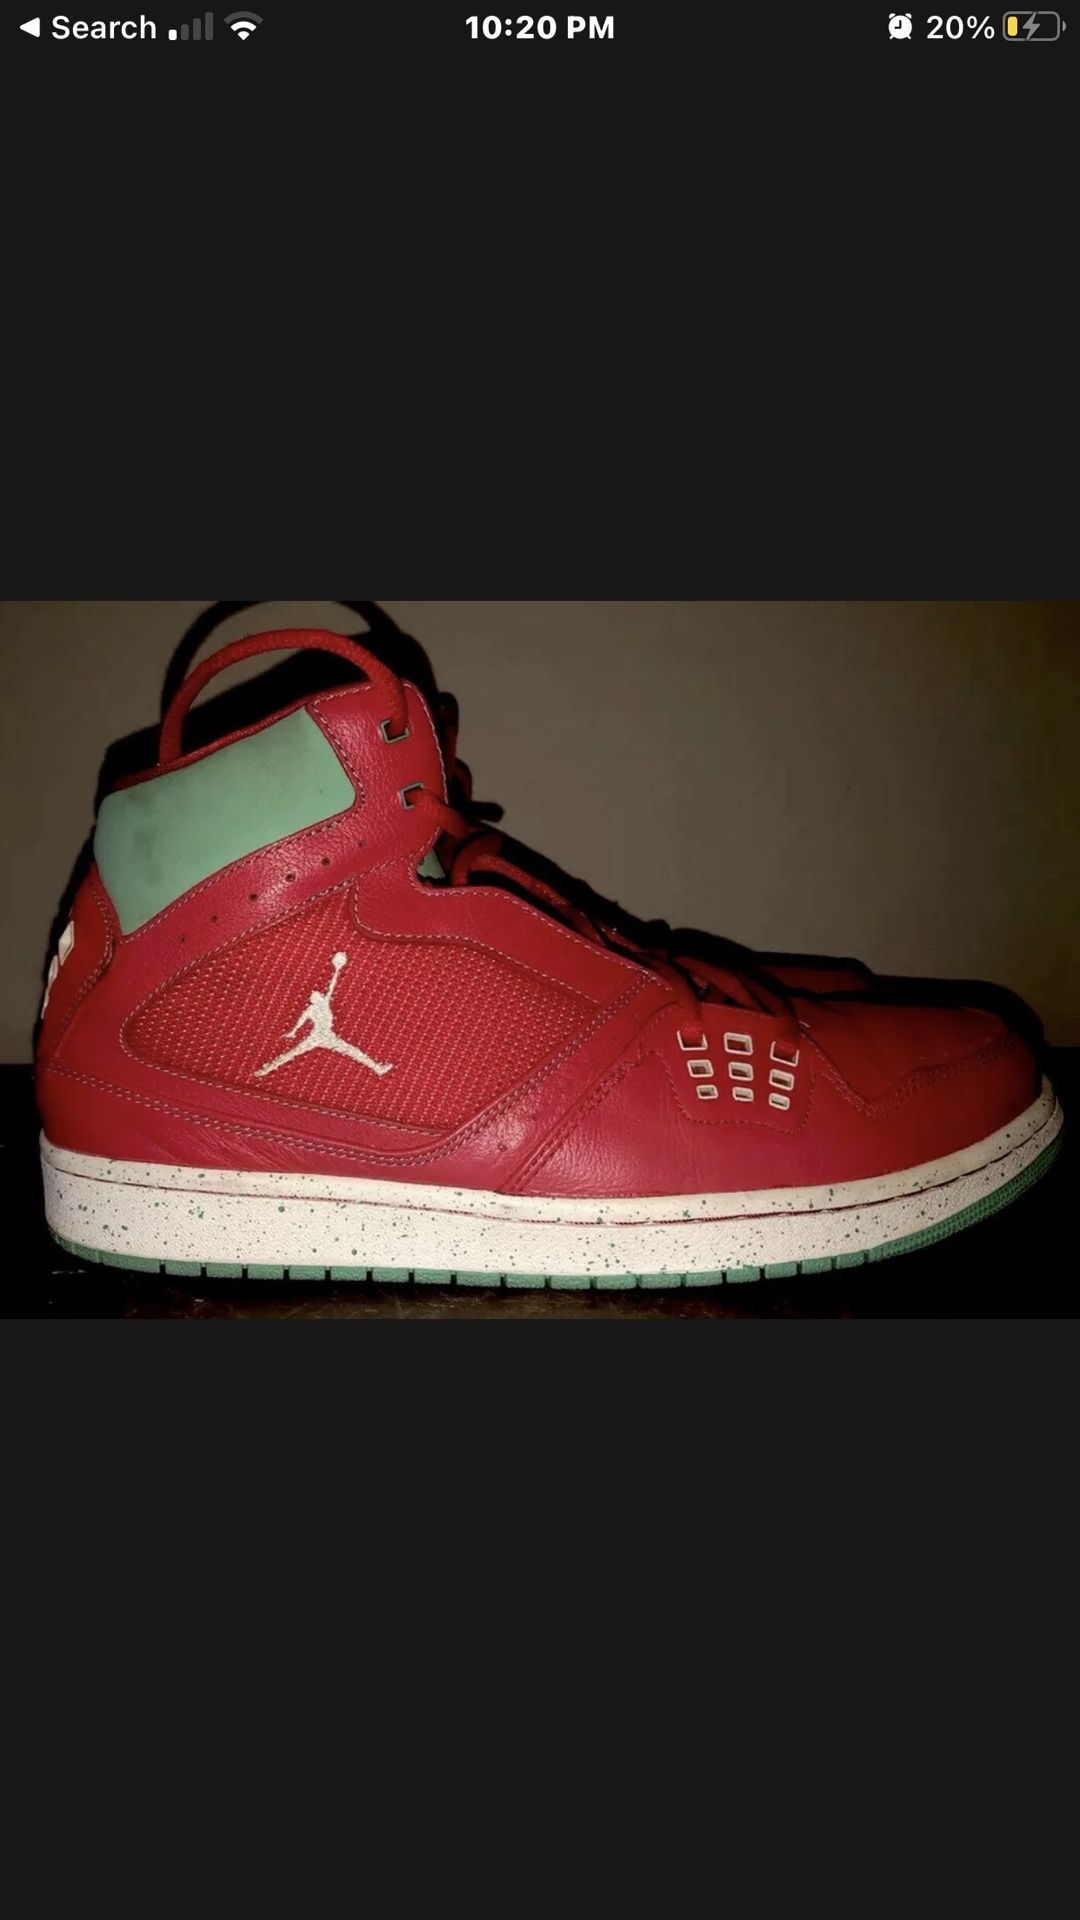 Nike Air Jordan 23   372704-612  Red Size 12 Men’s Red Turquoise